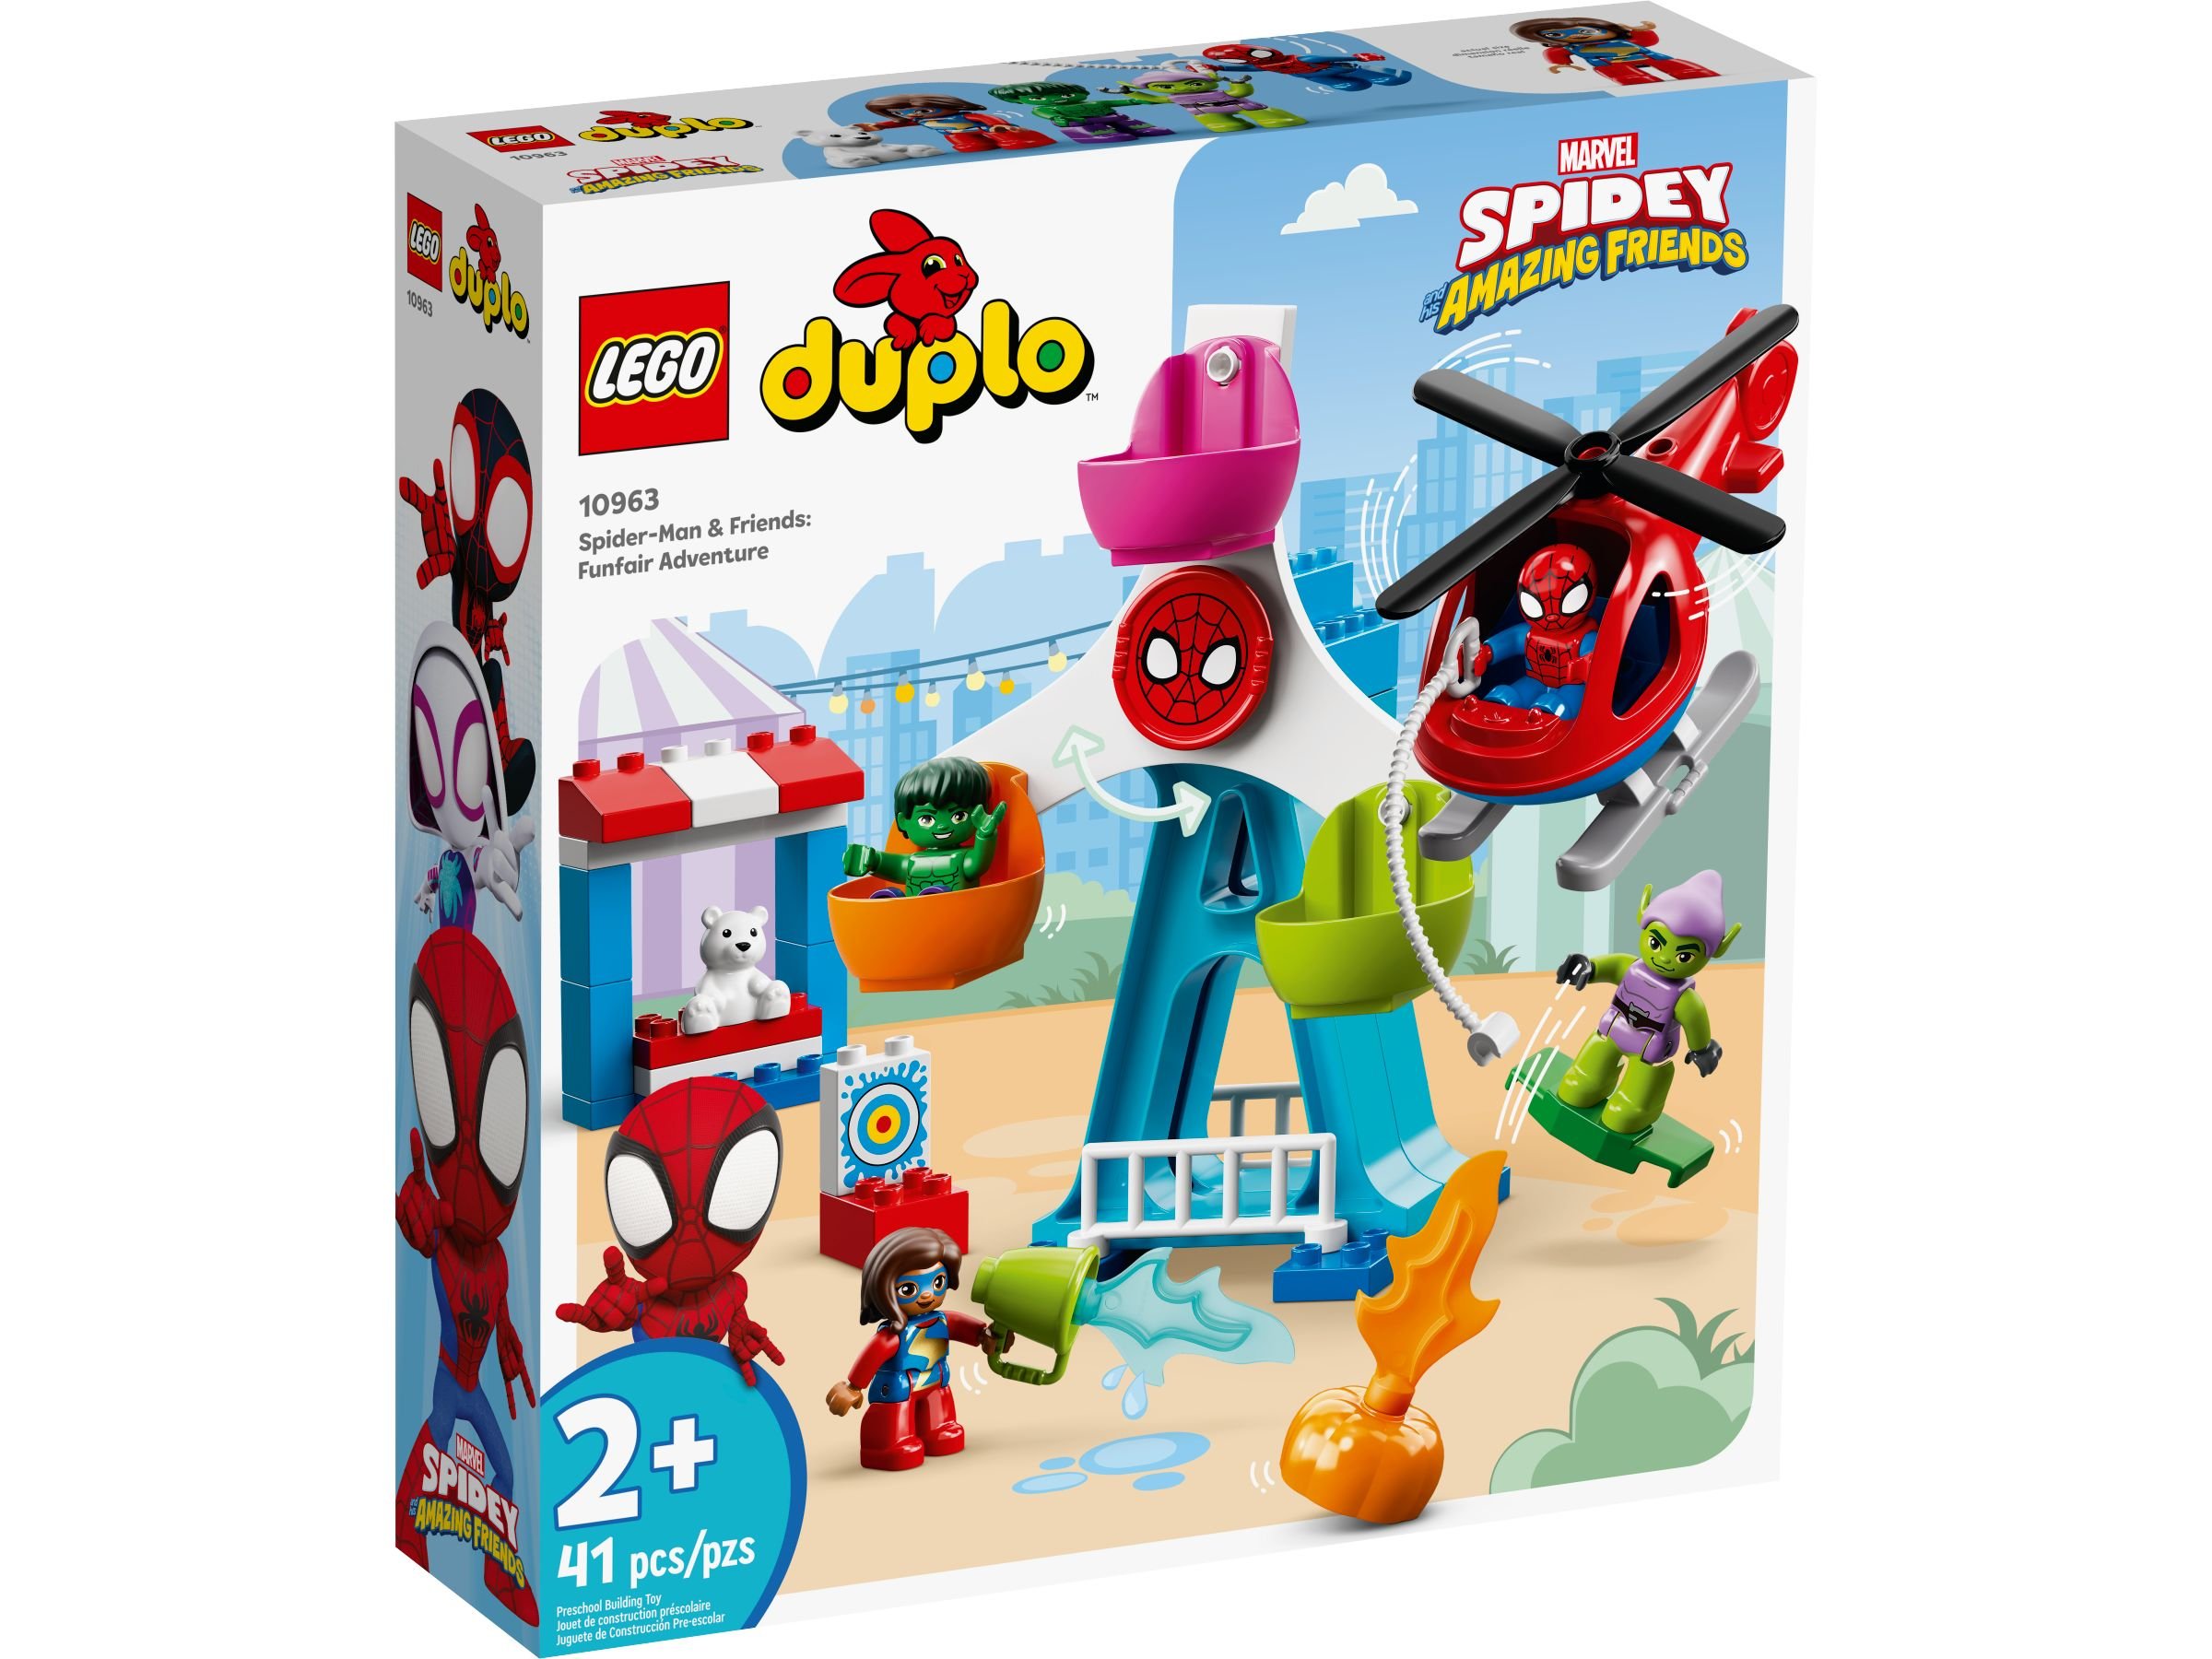 LEGO Duplo 10963 Spider-Man & Friends: Jahrmarktabenteuer LEGO_10963_alt1.jpg